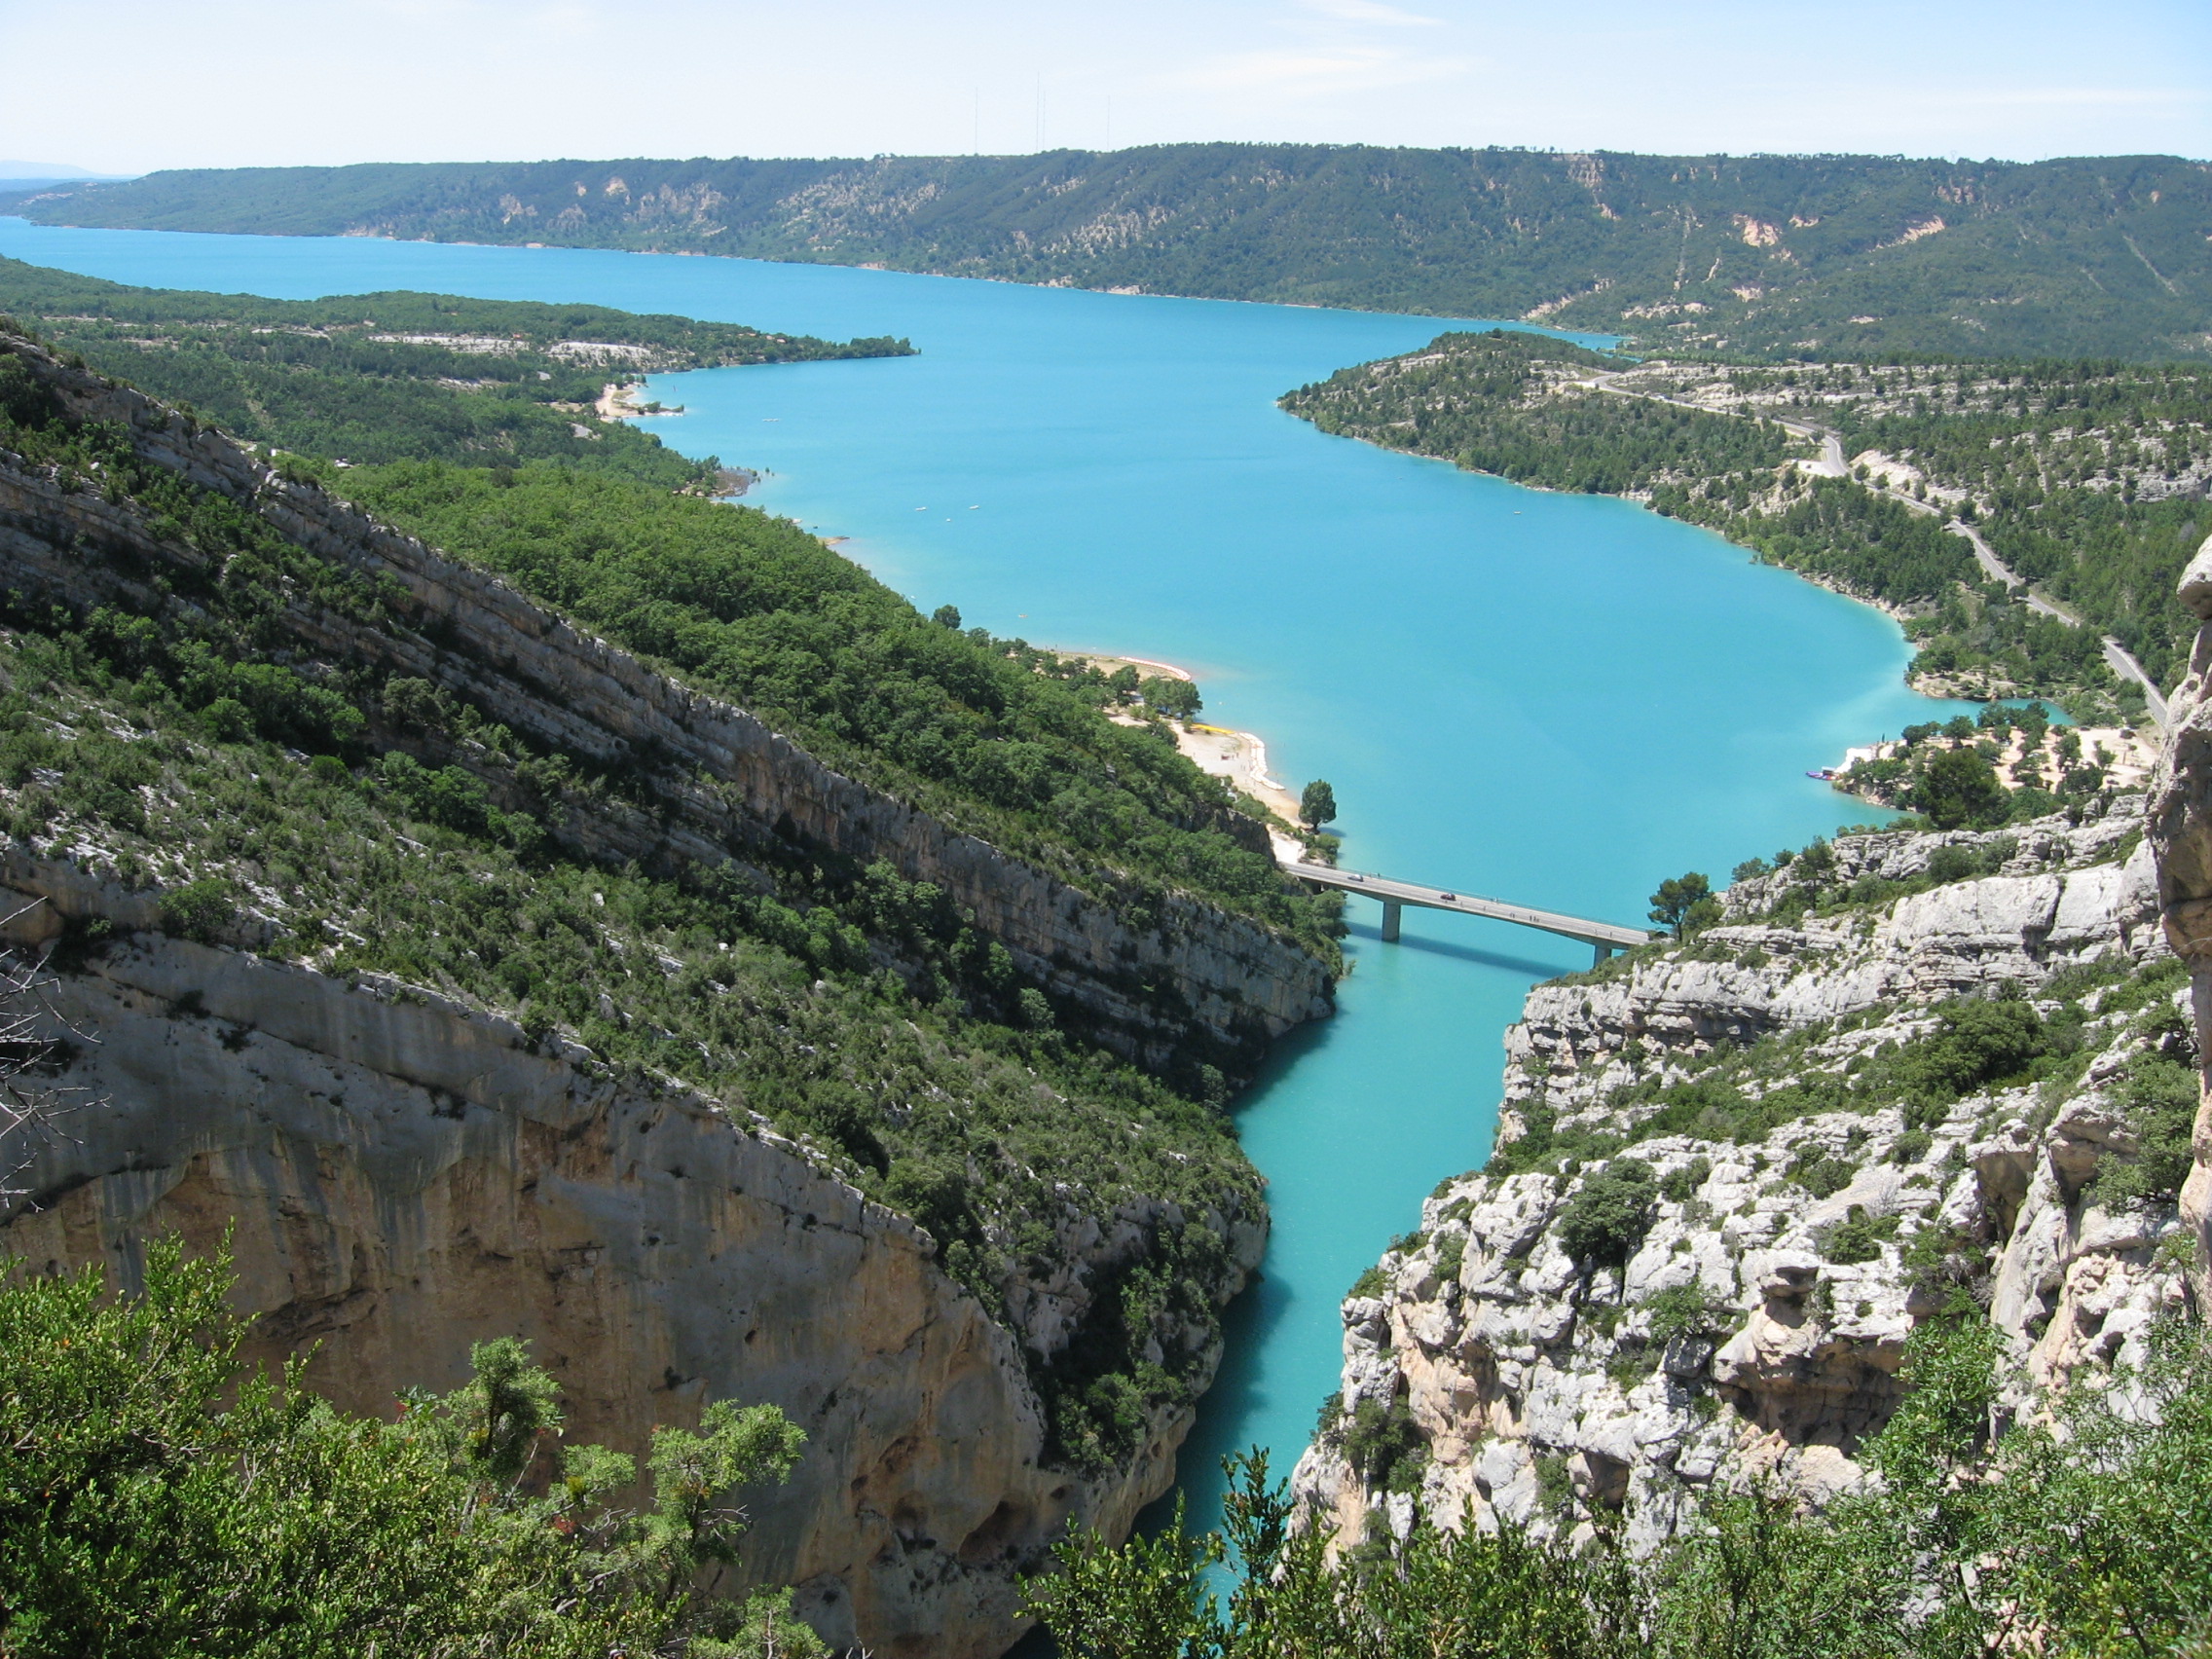 Eaux turquoise - Lac de Sainte-Croix